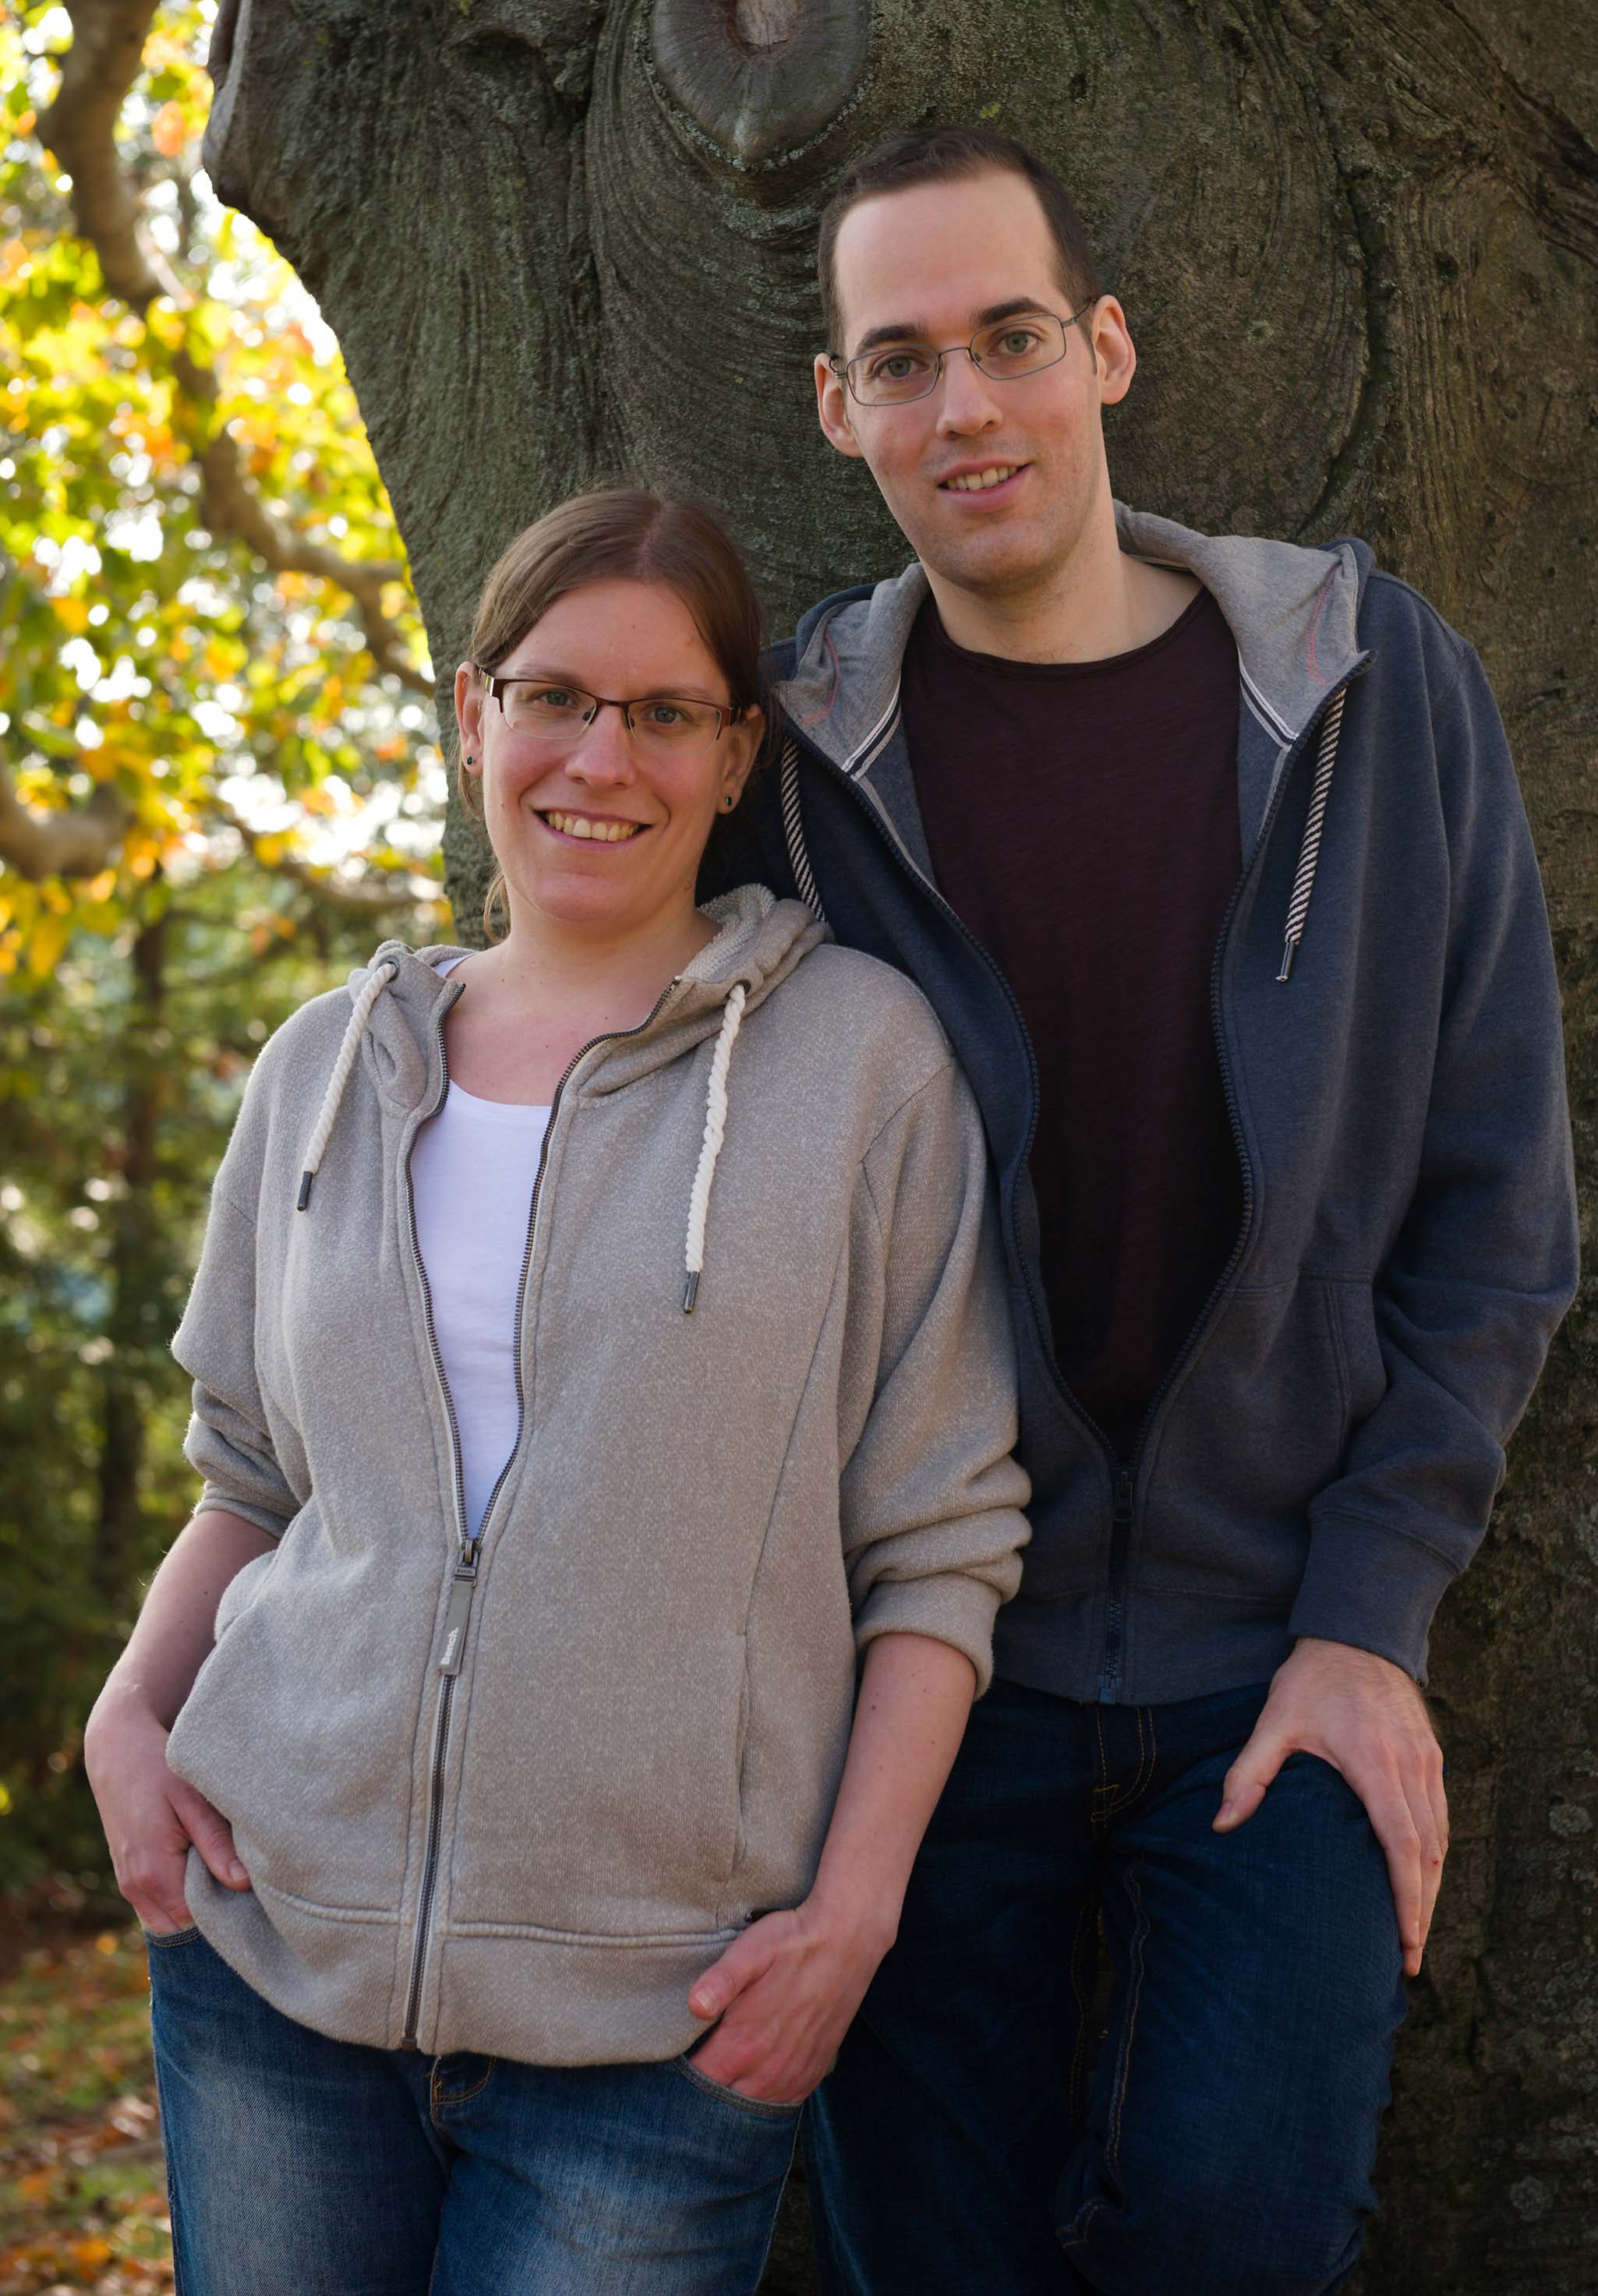 Thomas und Ann-Katrin im lässigen Outfit an Baum lehnend